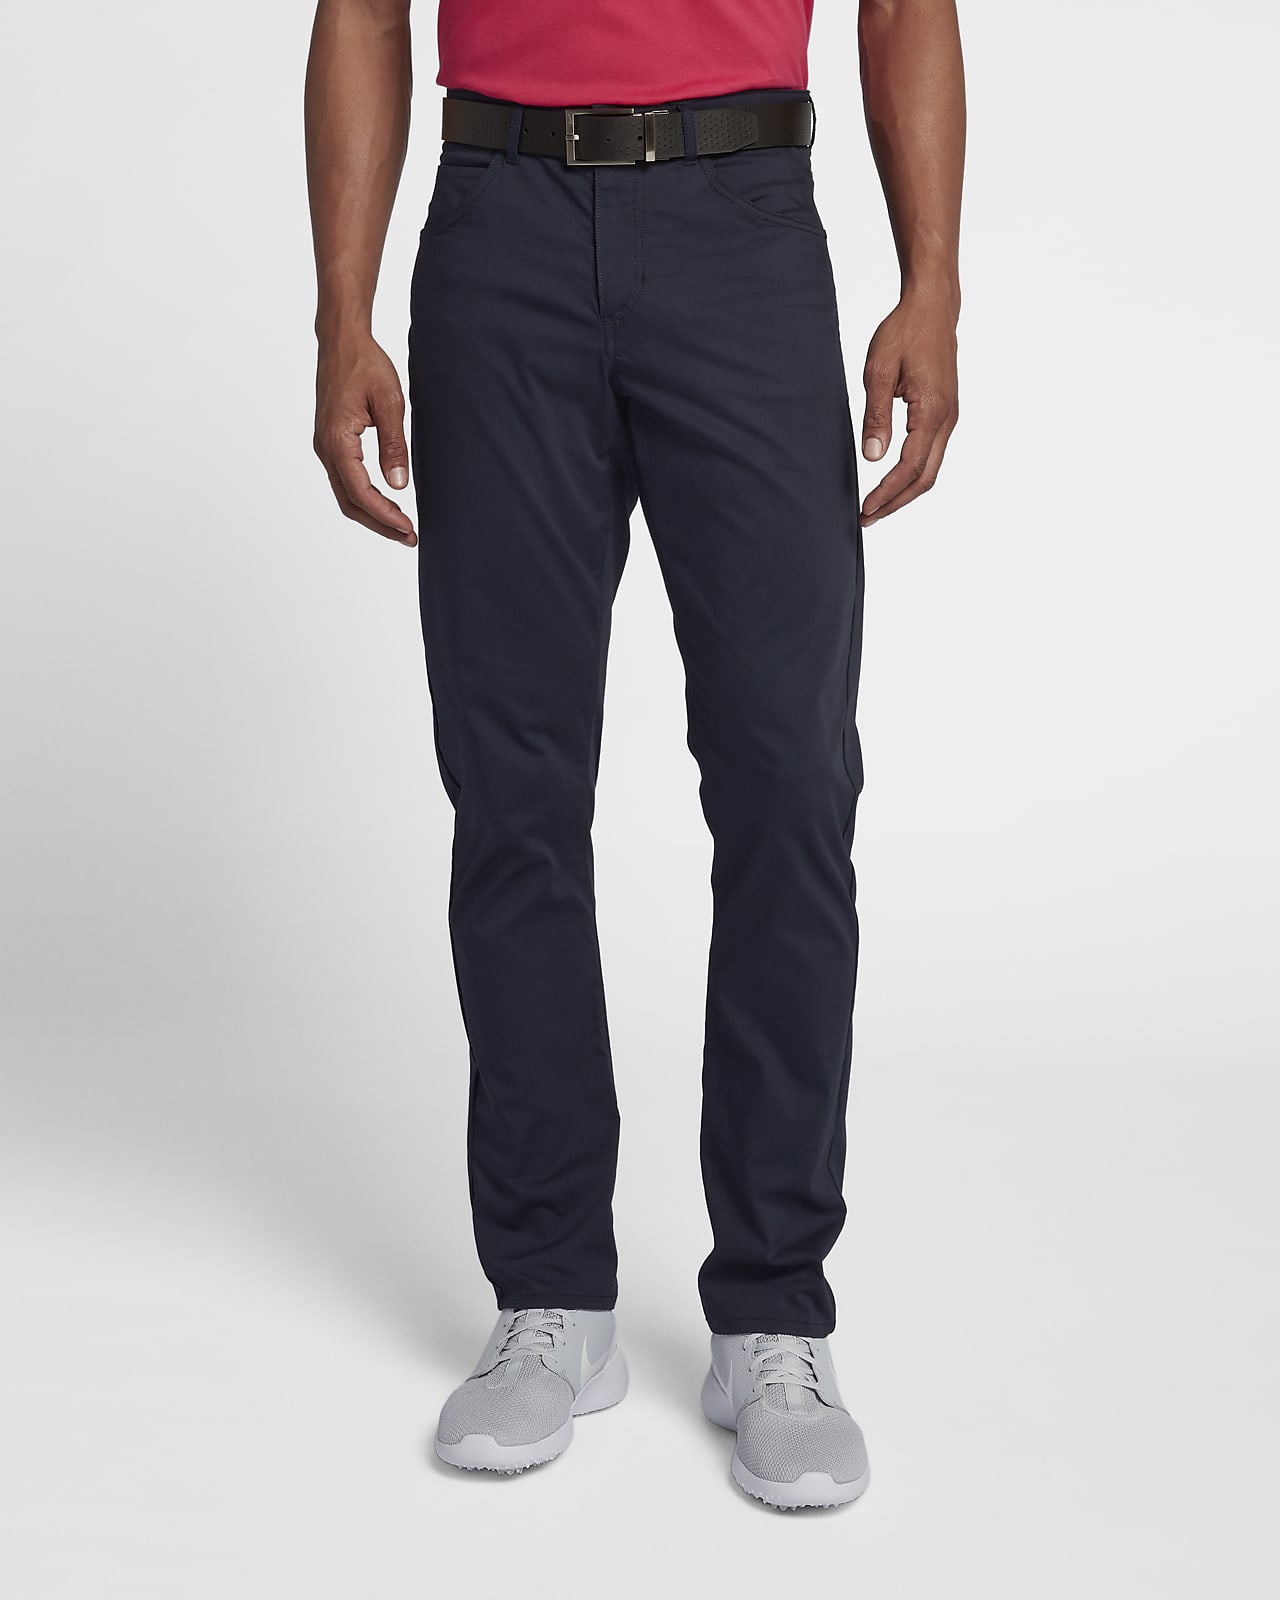 Pantalones de golf con 5 bolsillos de ajuste entallado para hombre Nike Flex.  Nike.com